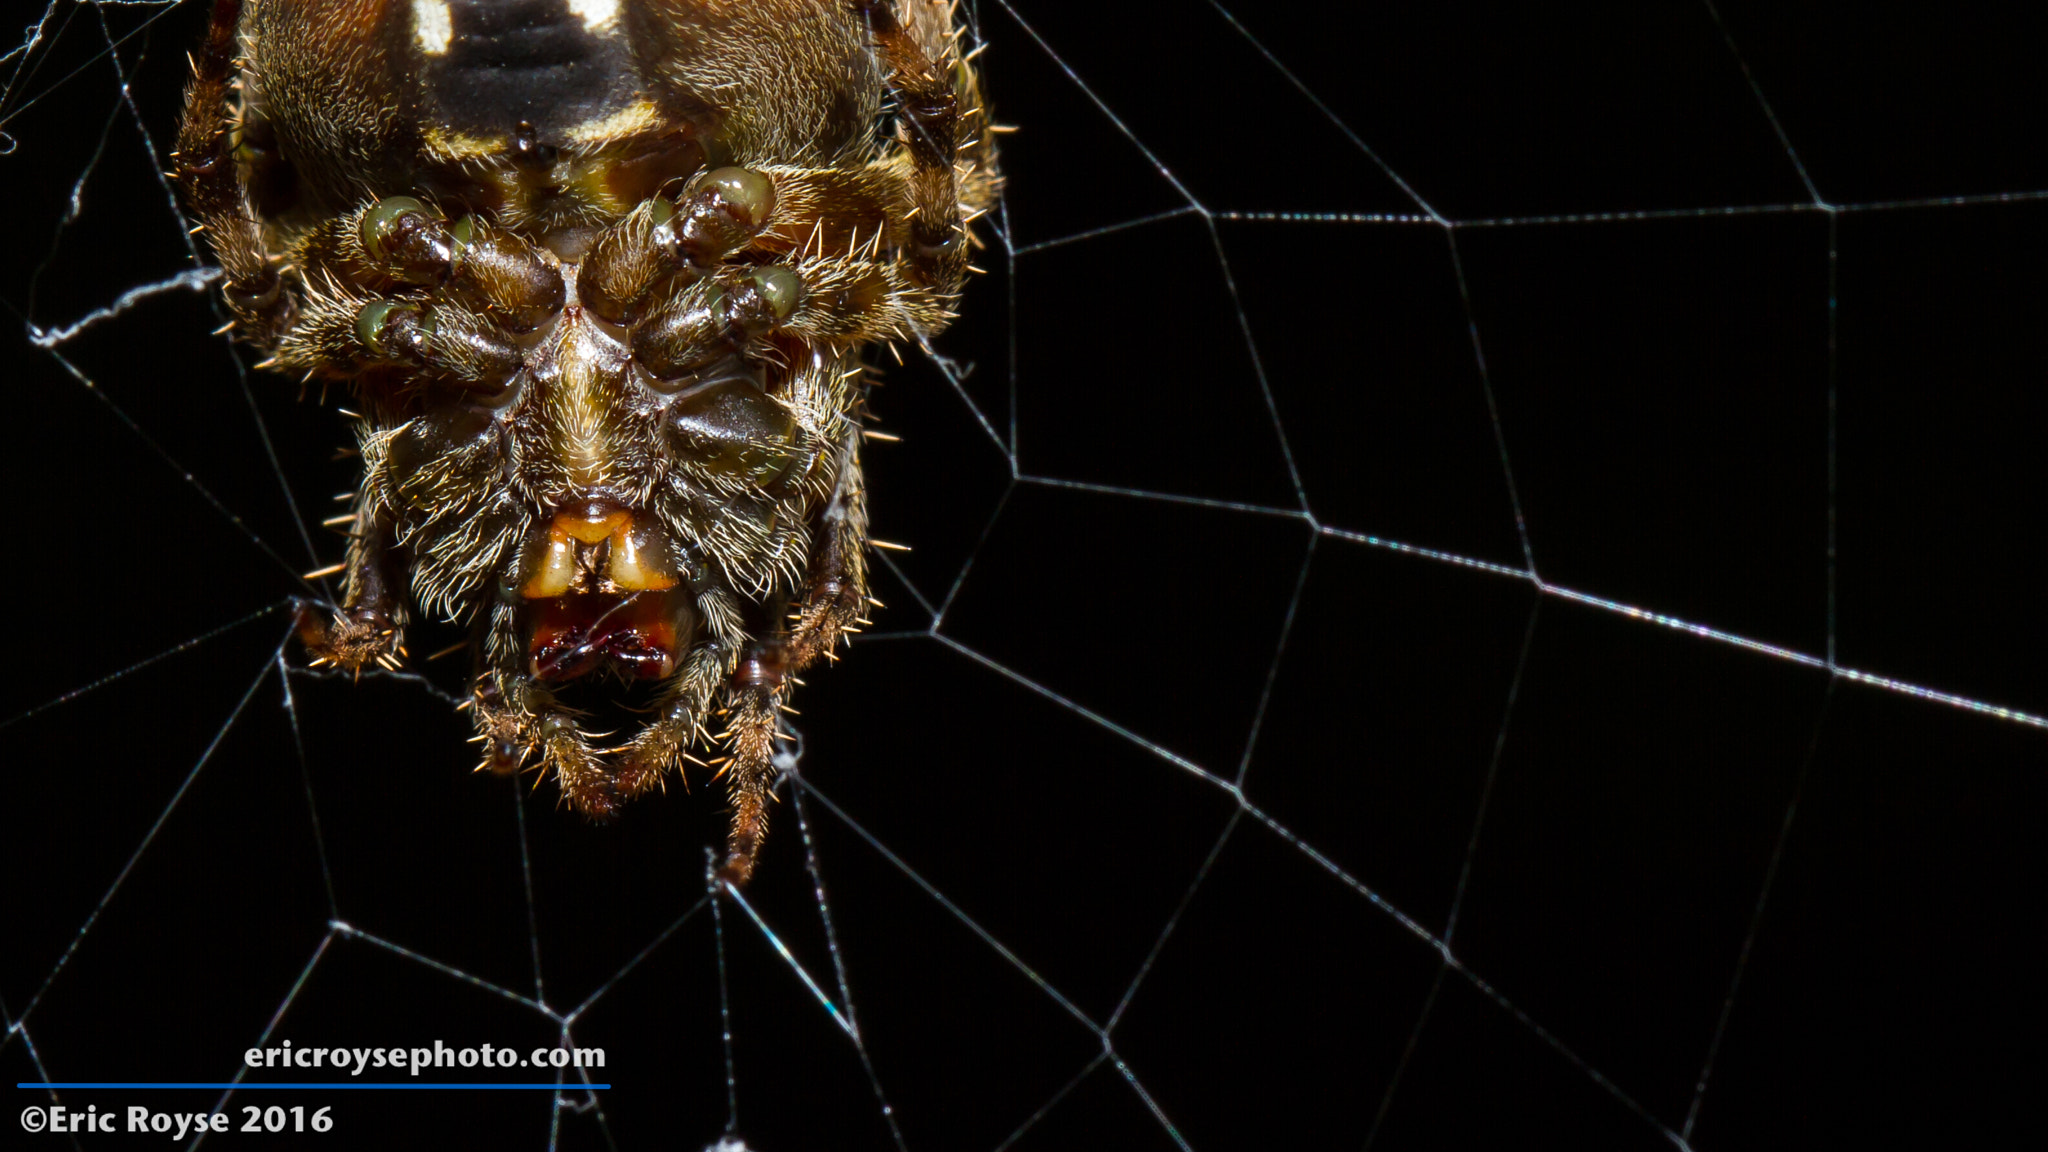 Canon EOS 7D sample photo. Spider queen photography